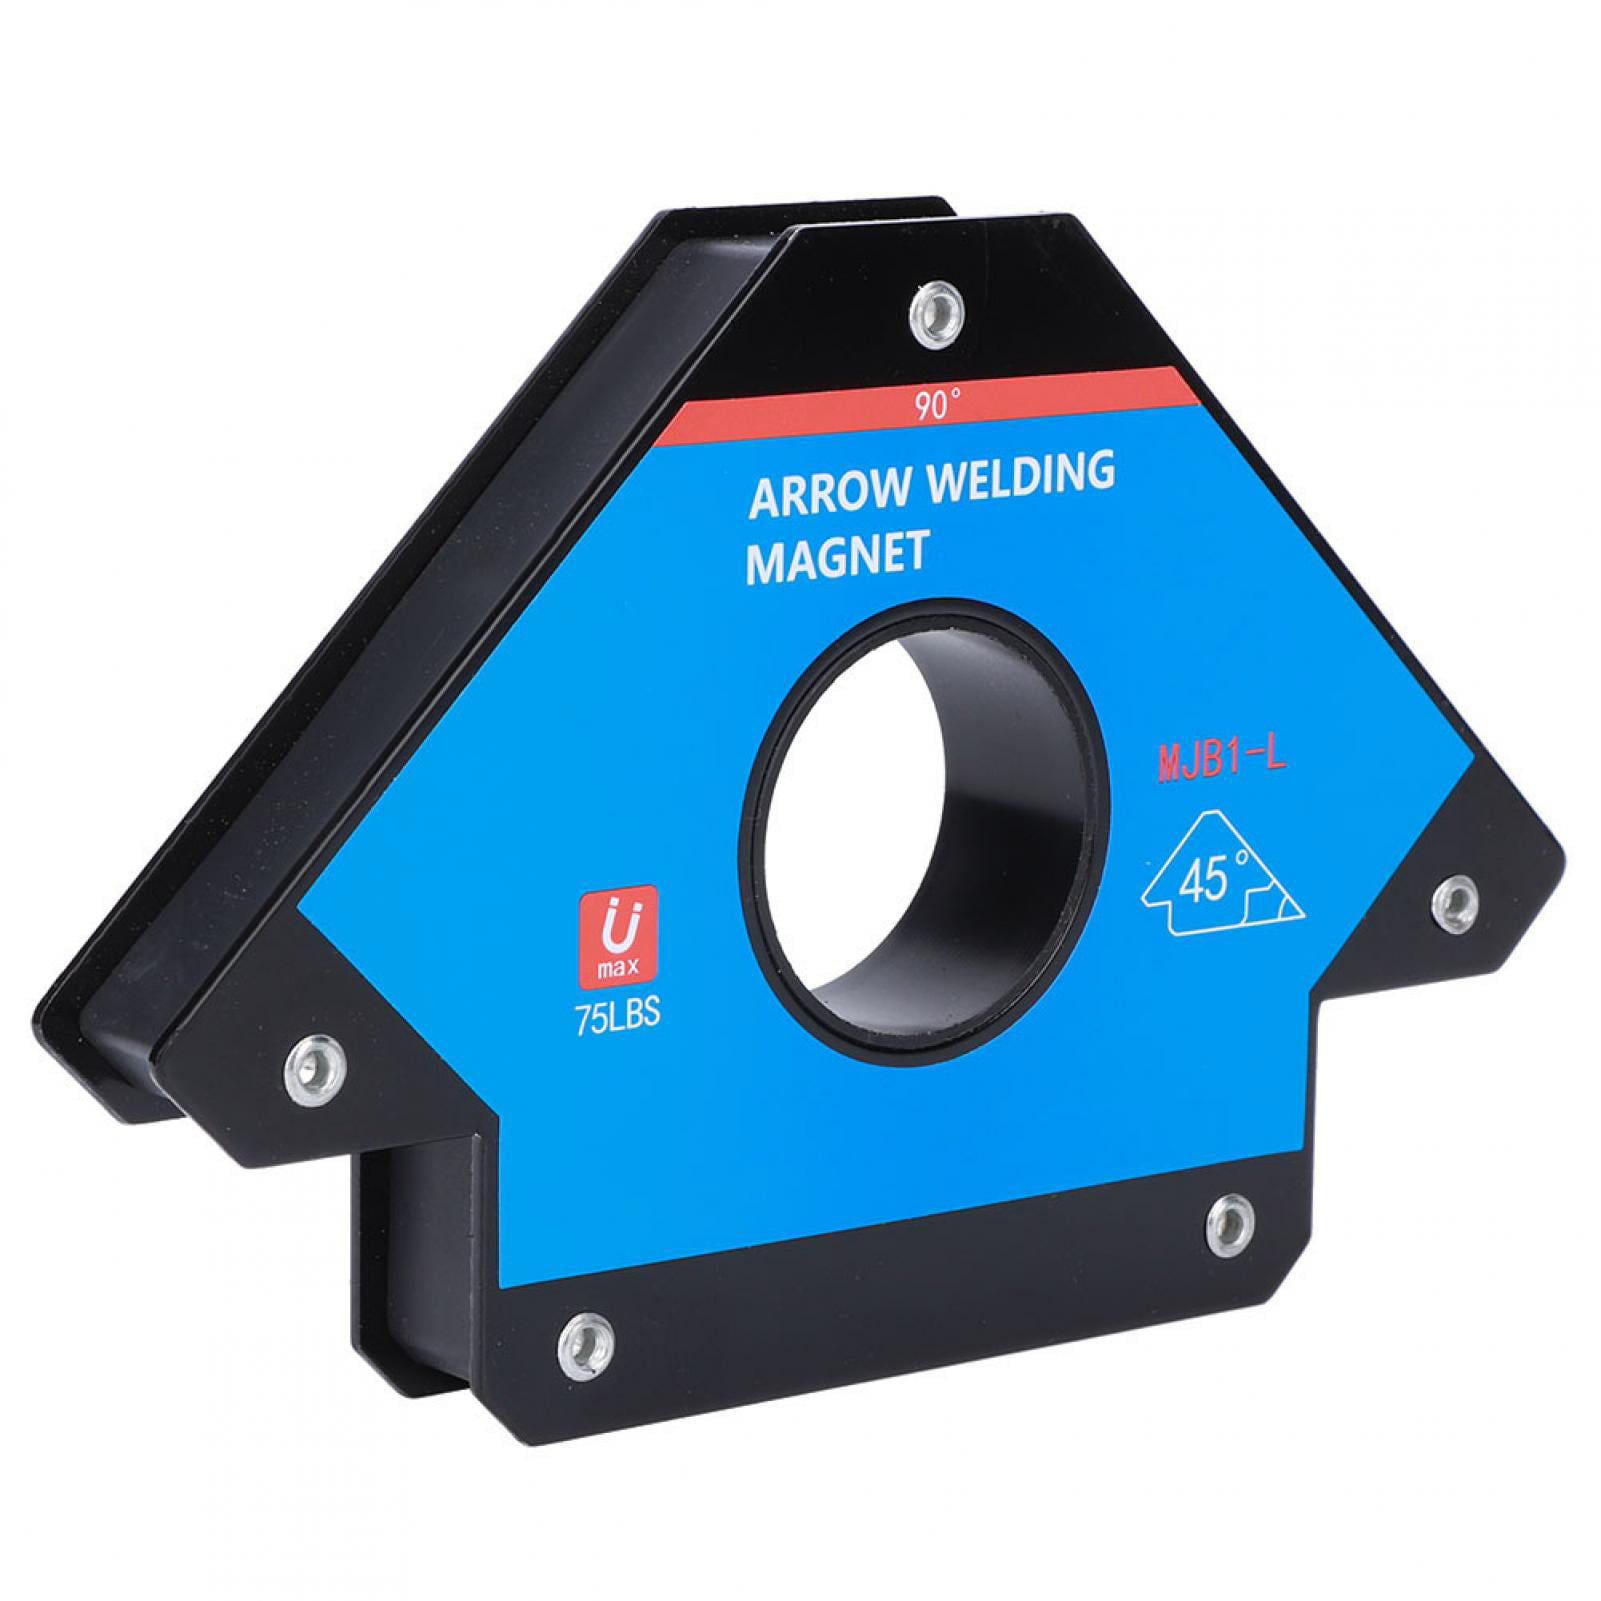 Magnetic Welding Locator Positioner Alloy Steel Weld Equipment Accessories